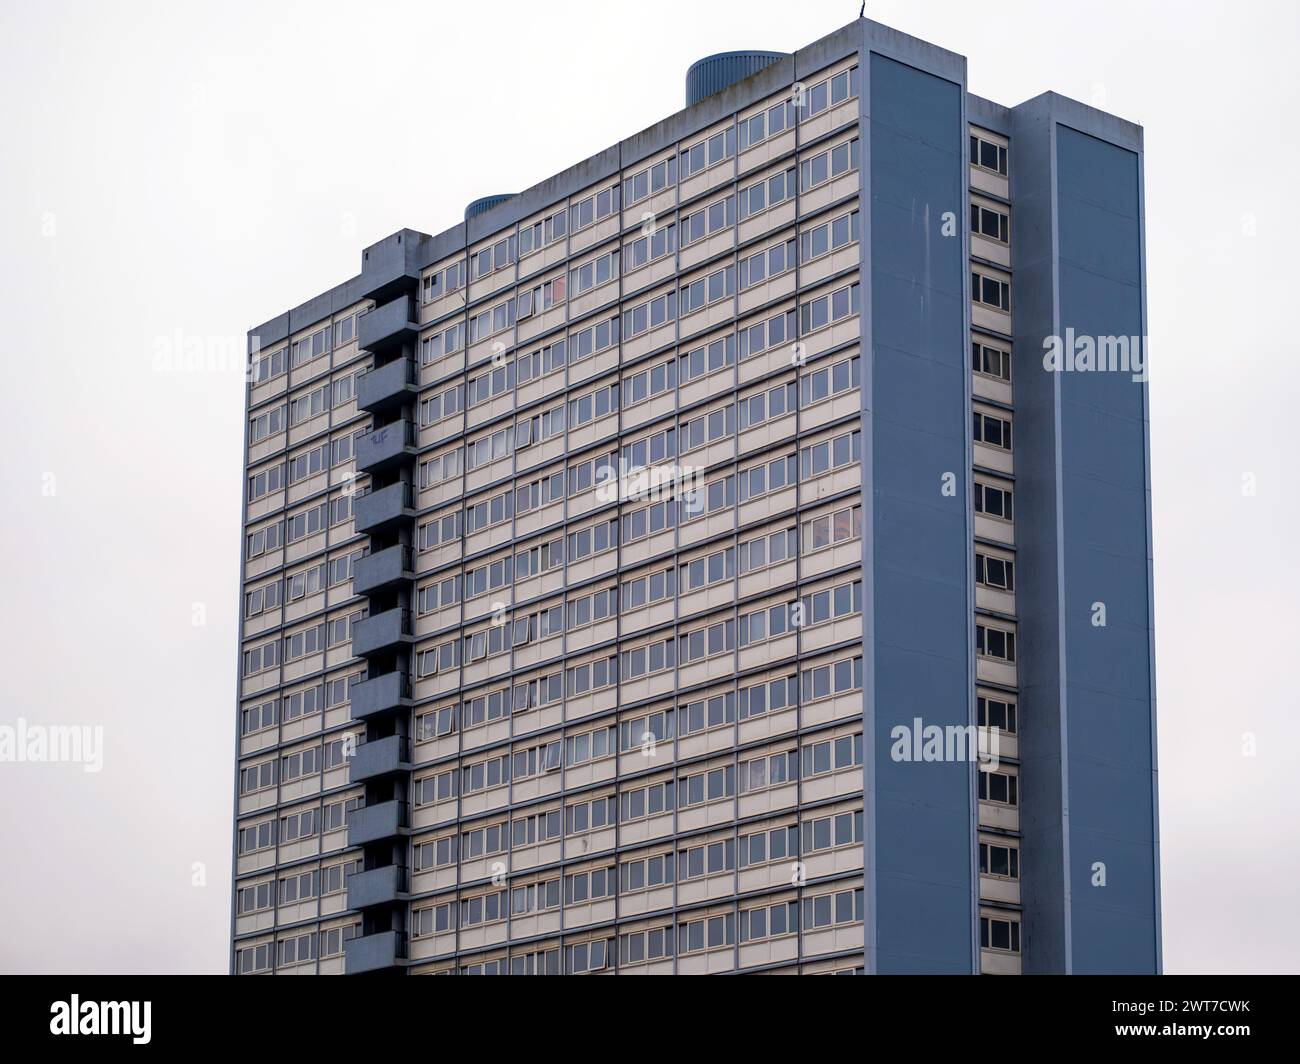 Die obersten Stockwerke des Hochhaus-Turmblocks aus den 1960er Jahren in Gateshead, England, Großbritannien. Das Gericht Redheugh ist derzeit für den Abriss durch den rat vorgesehen. Stockfoto